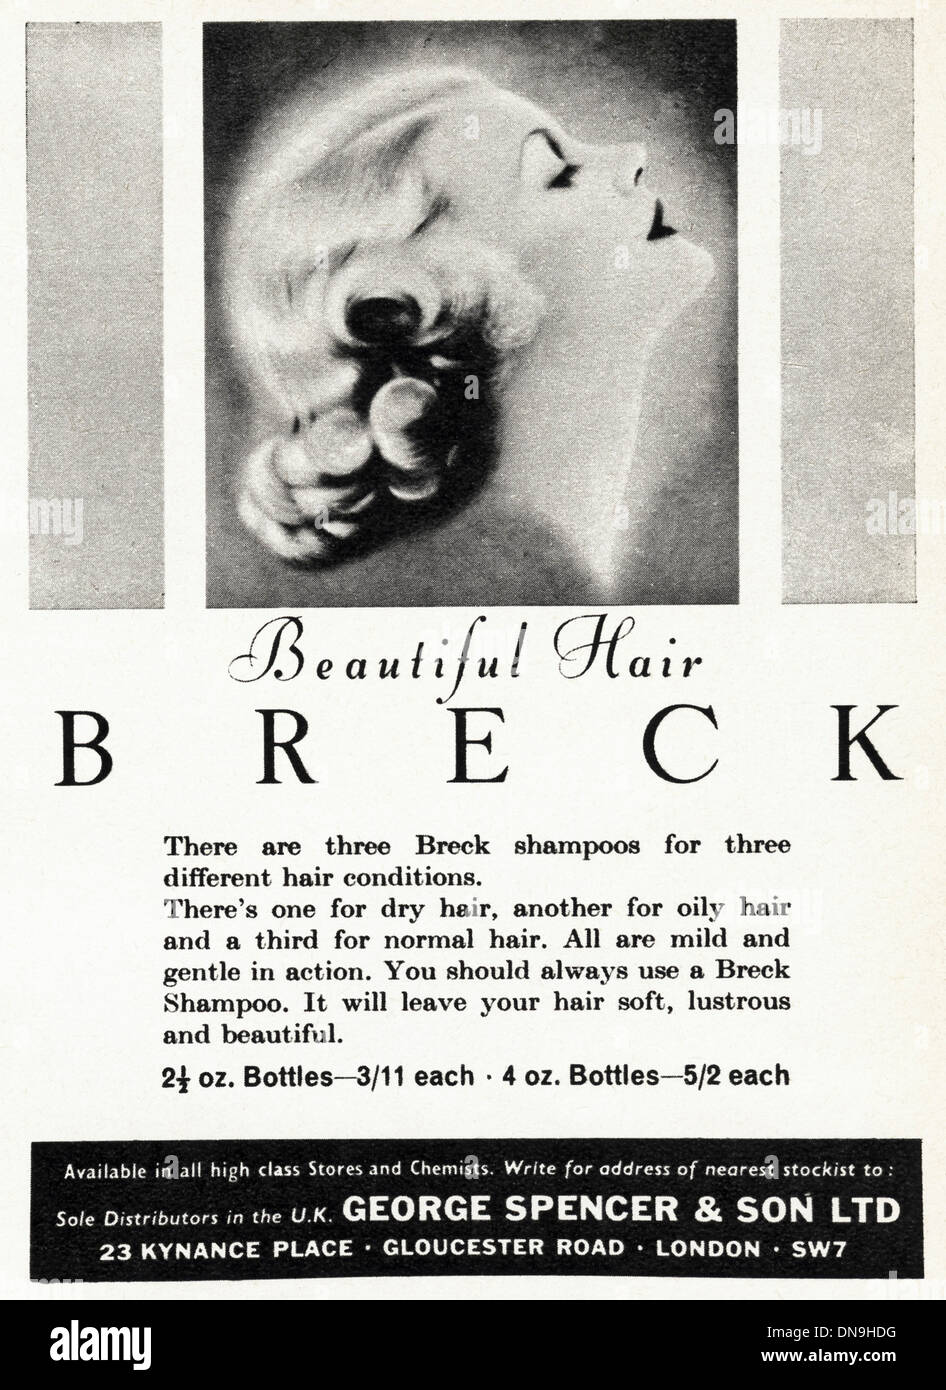 Années 1950, la publicité. Vintage original women's magazine de mode publicité pour le shampooing BRECK pour de beaux cheveux Banque D'Images